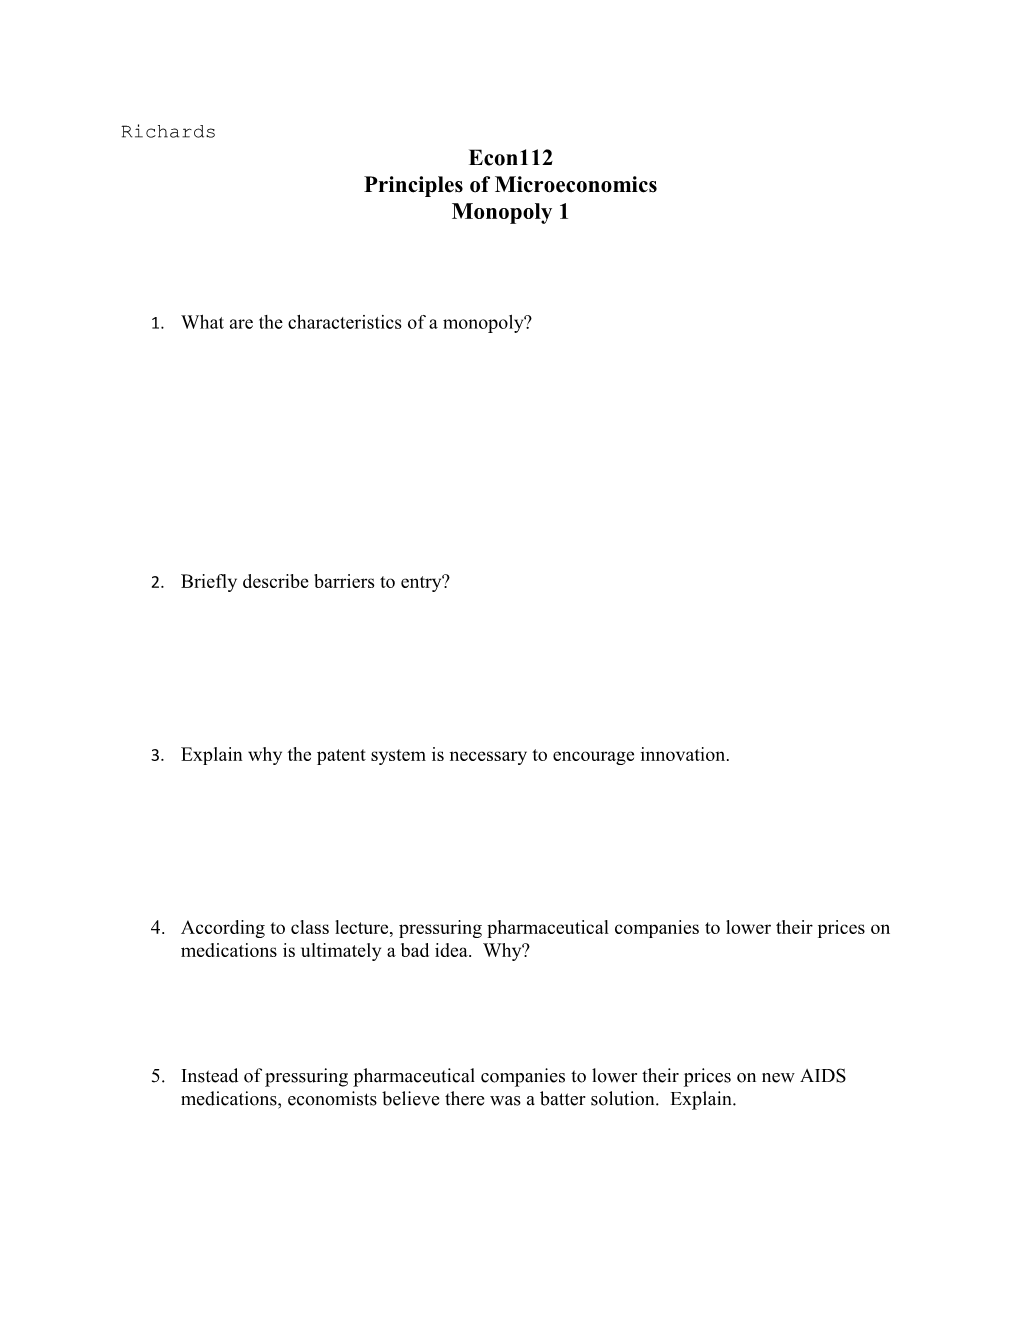 Principles of Microeconomics s2